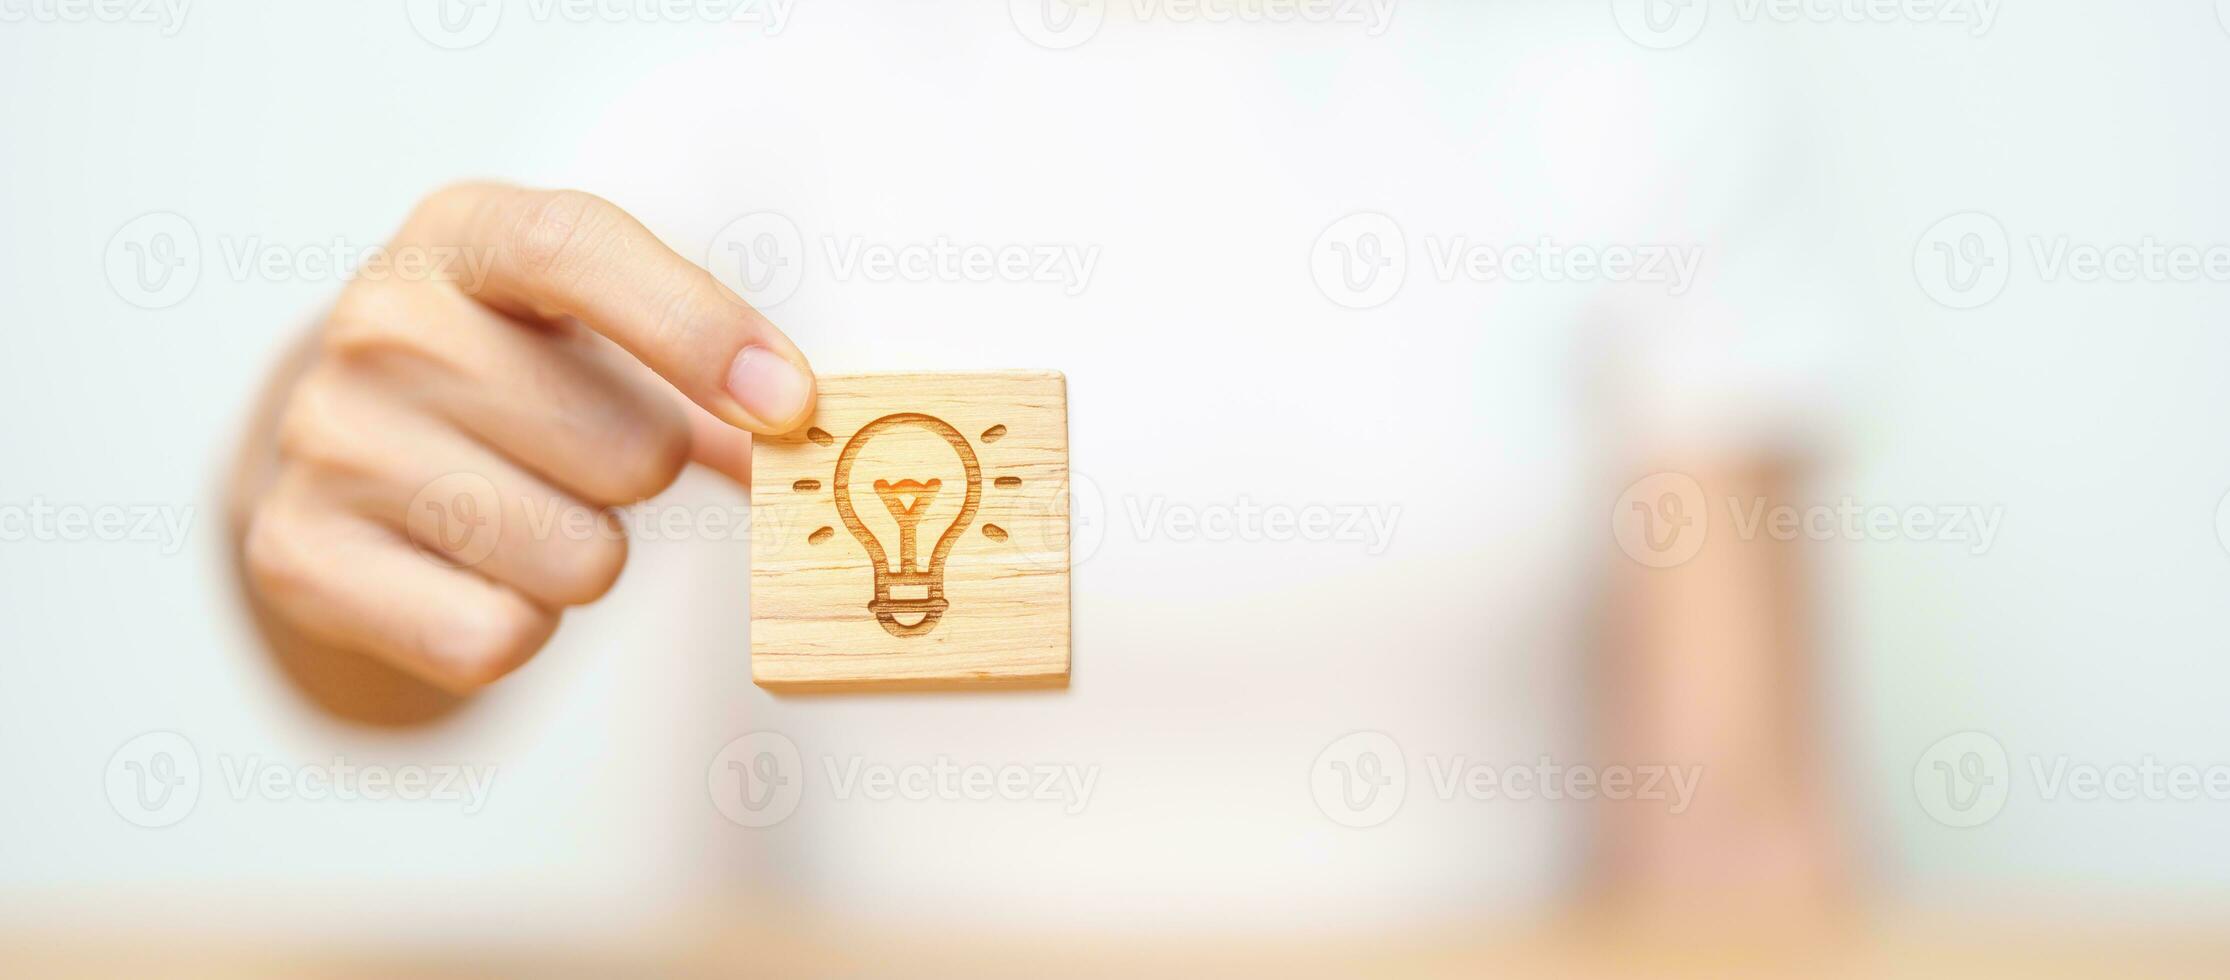 mão segure o bloco de lâmpada com ideia de negócio, estratégia, inovação, criatividade, aprendizagem, brainstorming e conceito de sucesso foto